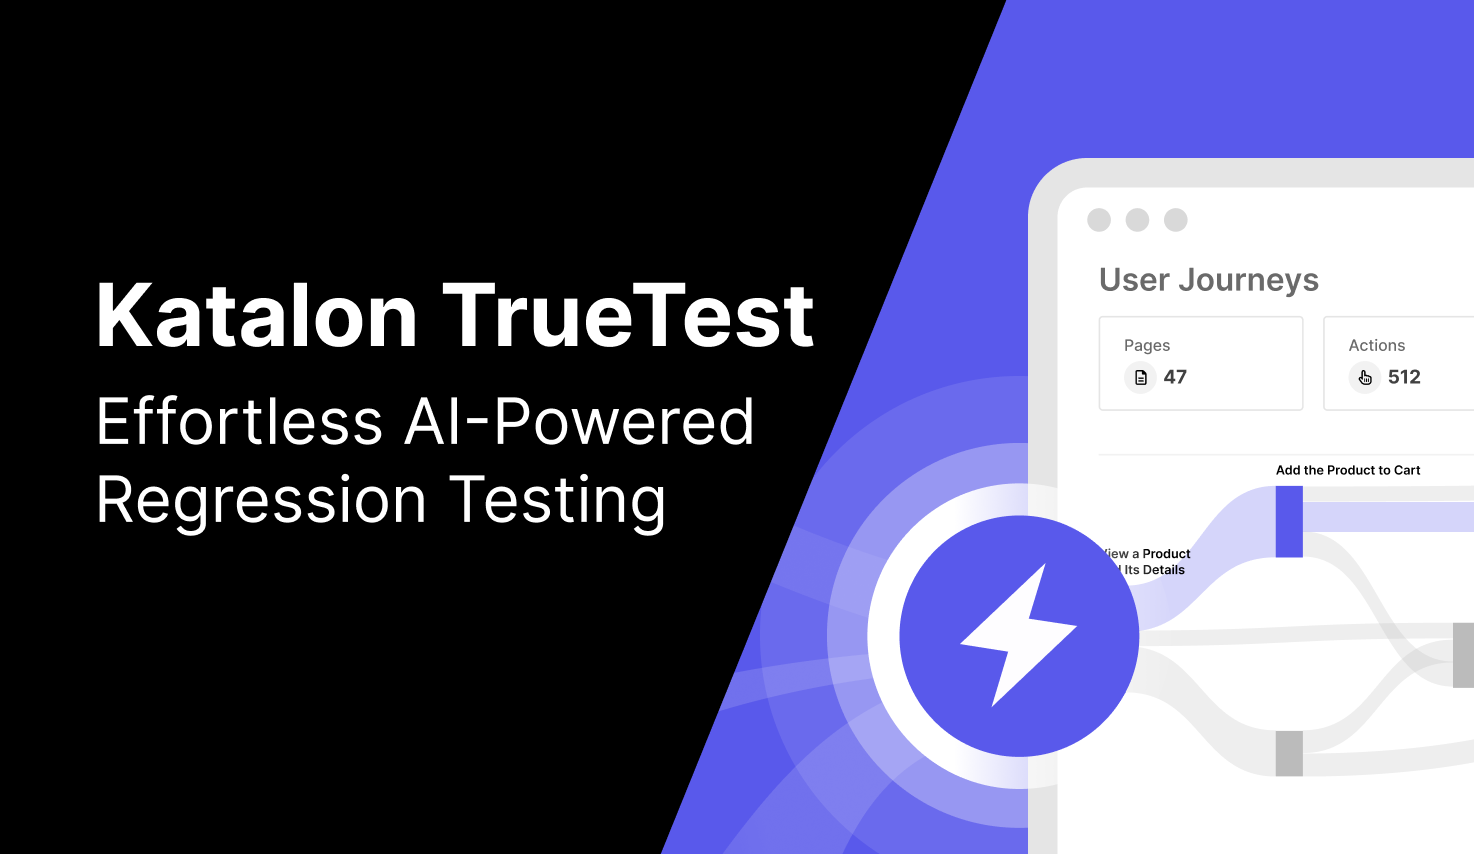 Katalon TrueTest AI-powered regression testing